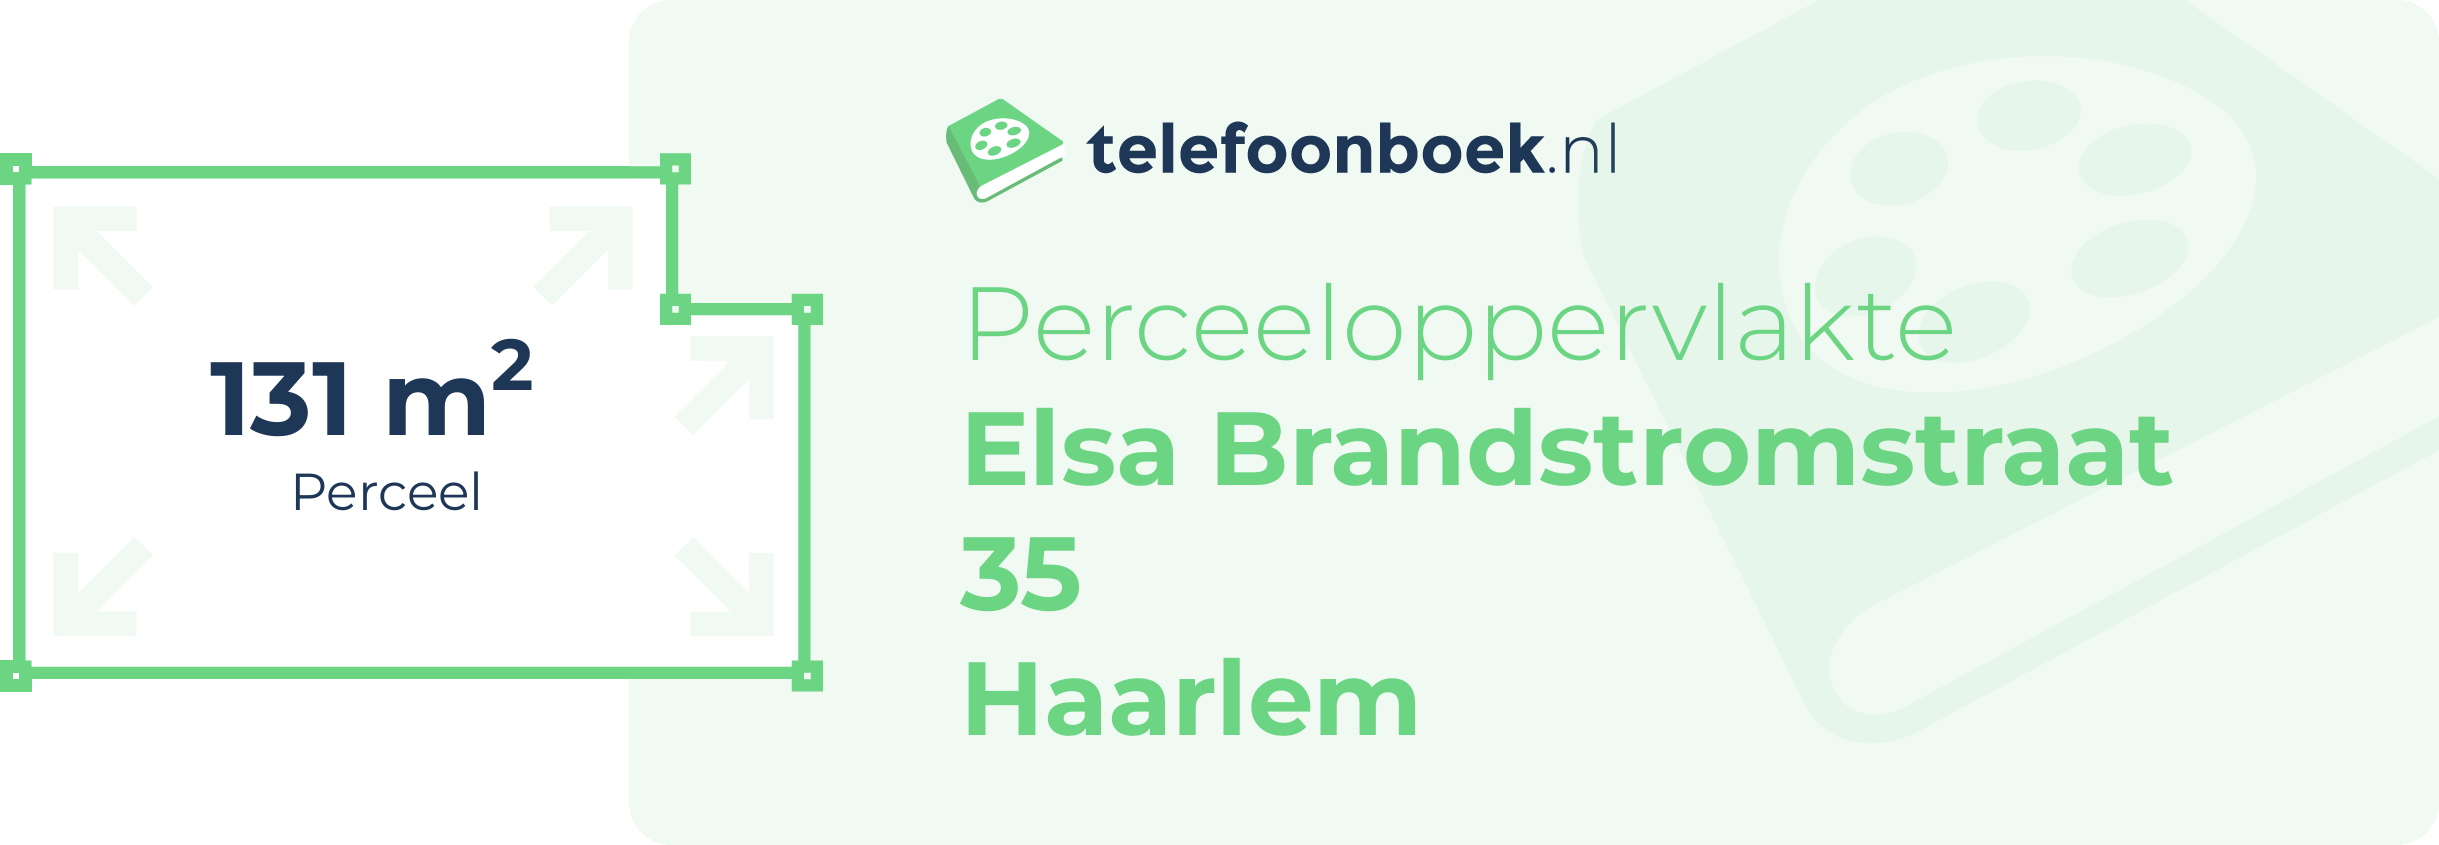 Perceeloppervlakte Elsa Brandstromstraat 35 Haarlem